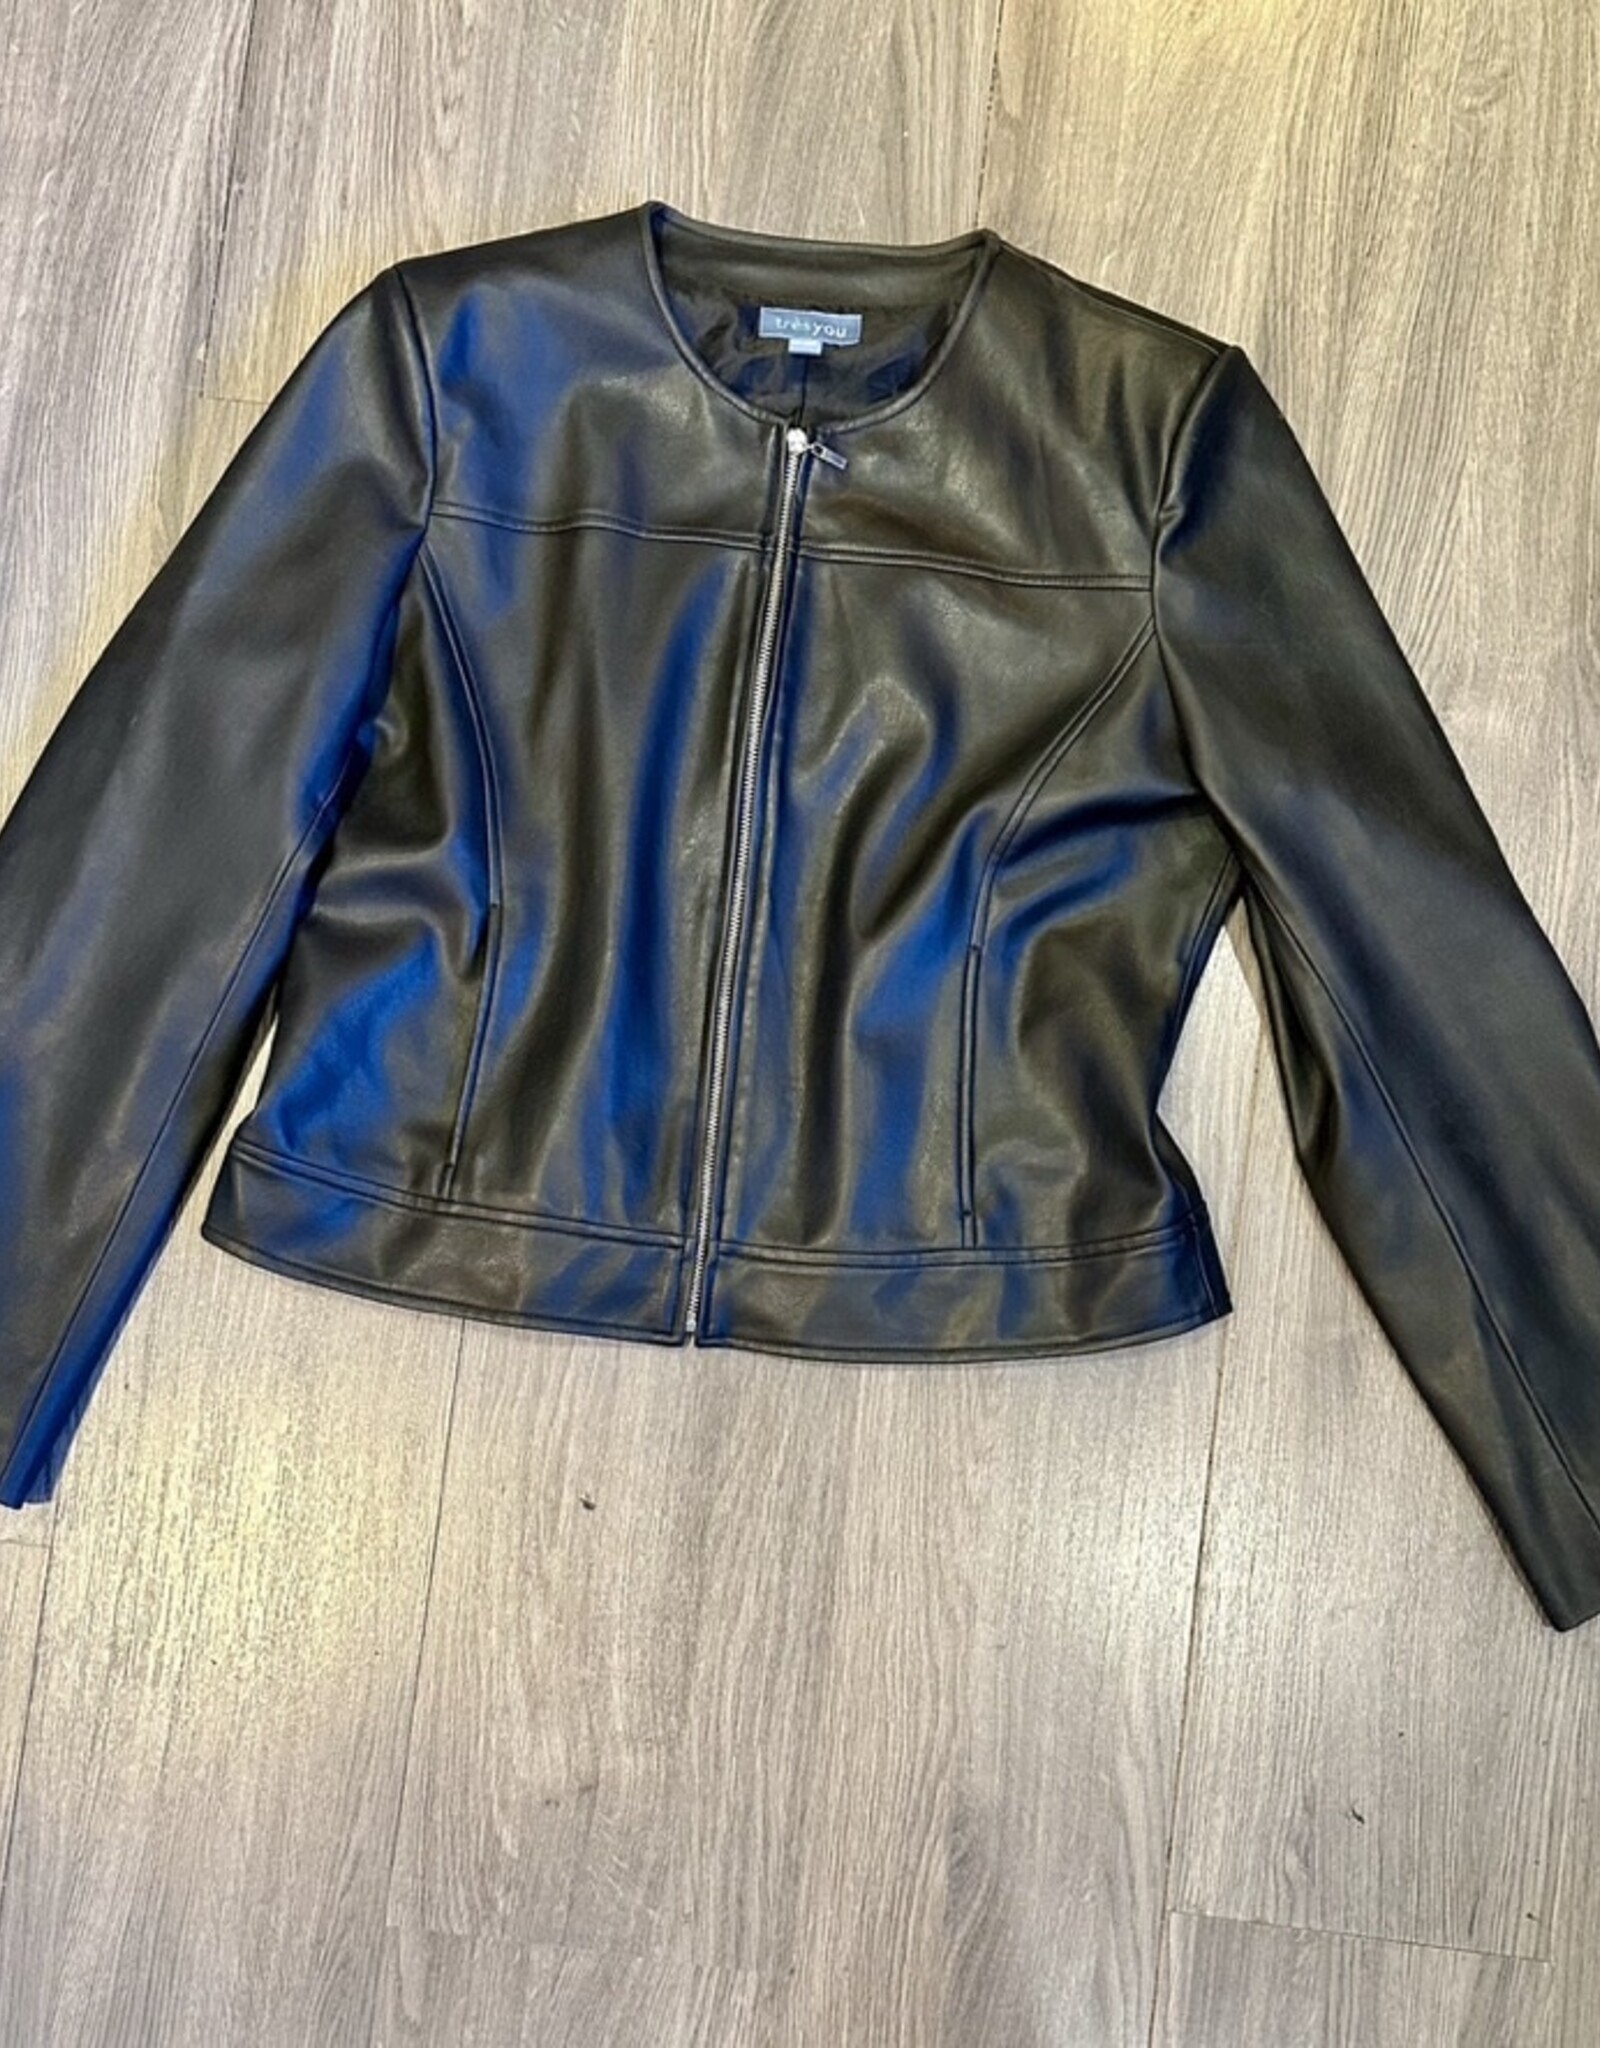 Clothing - Leather Jacket